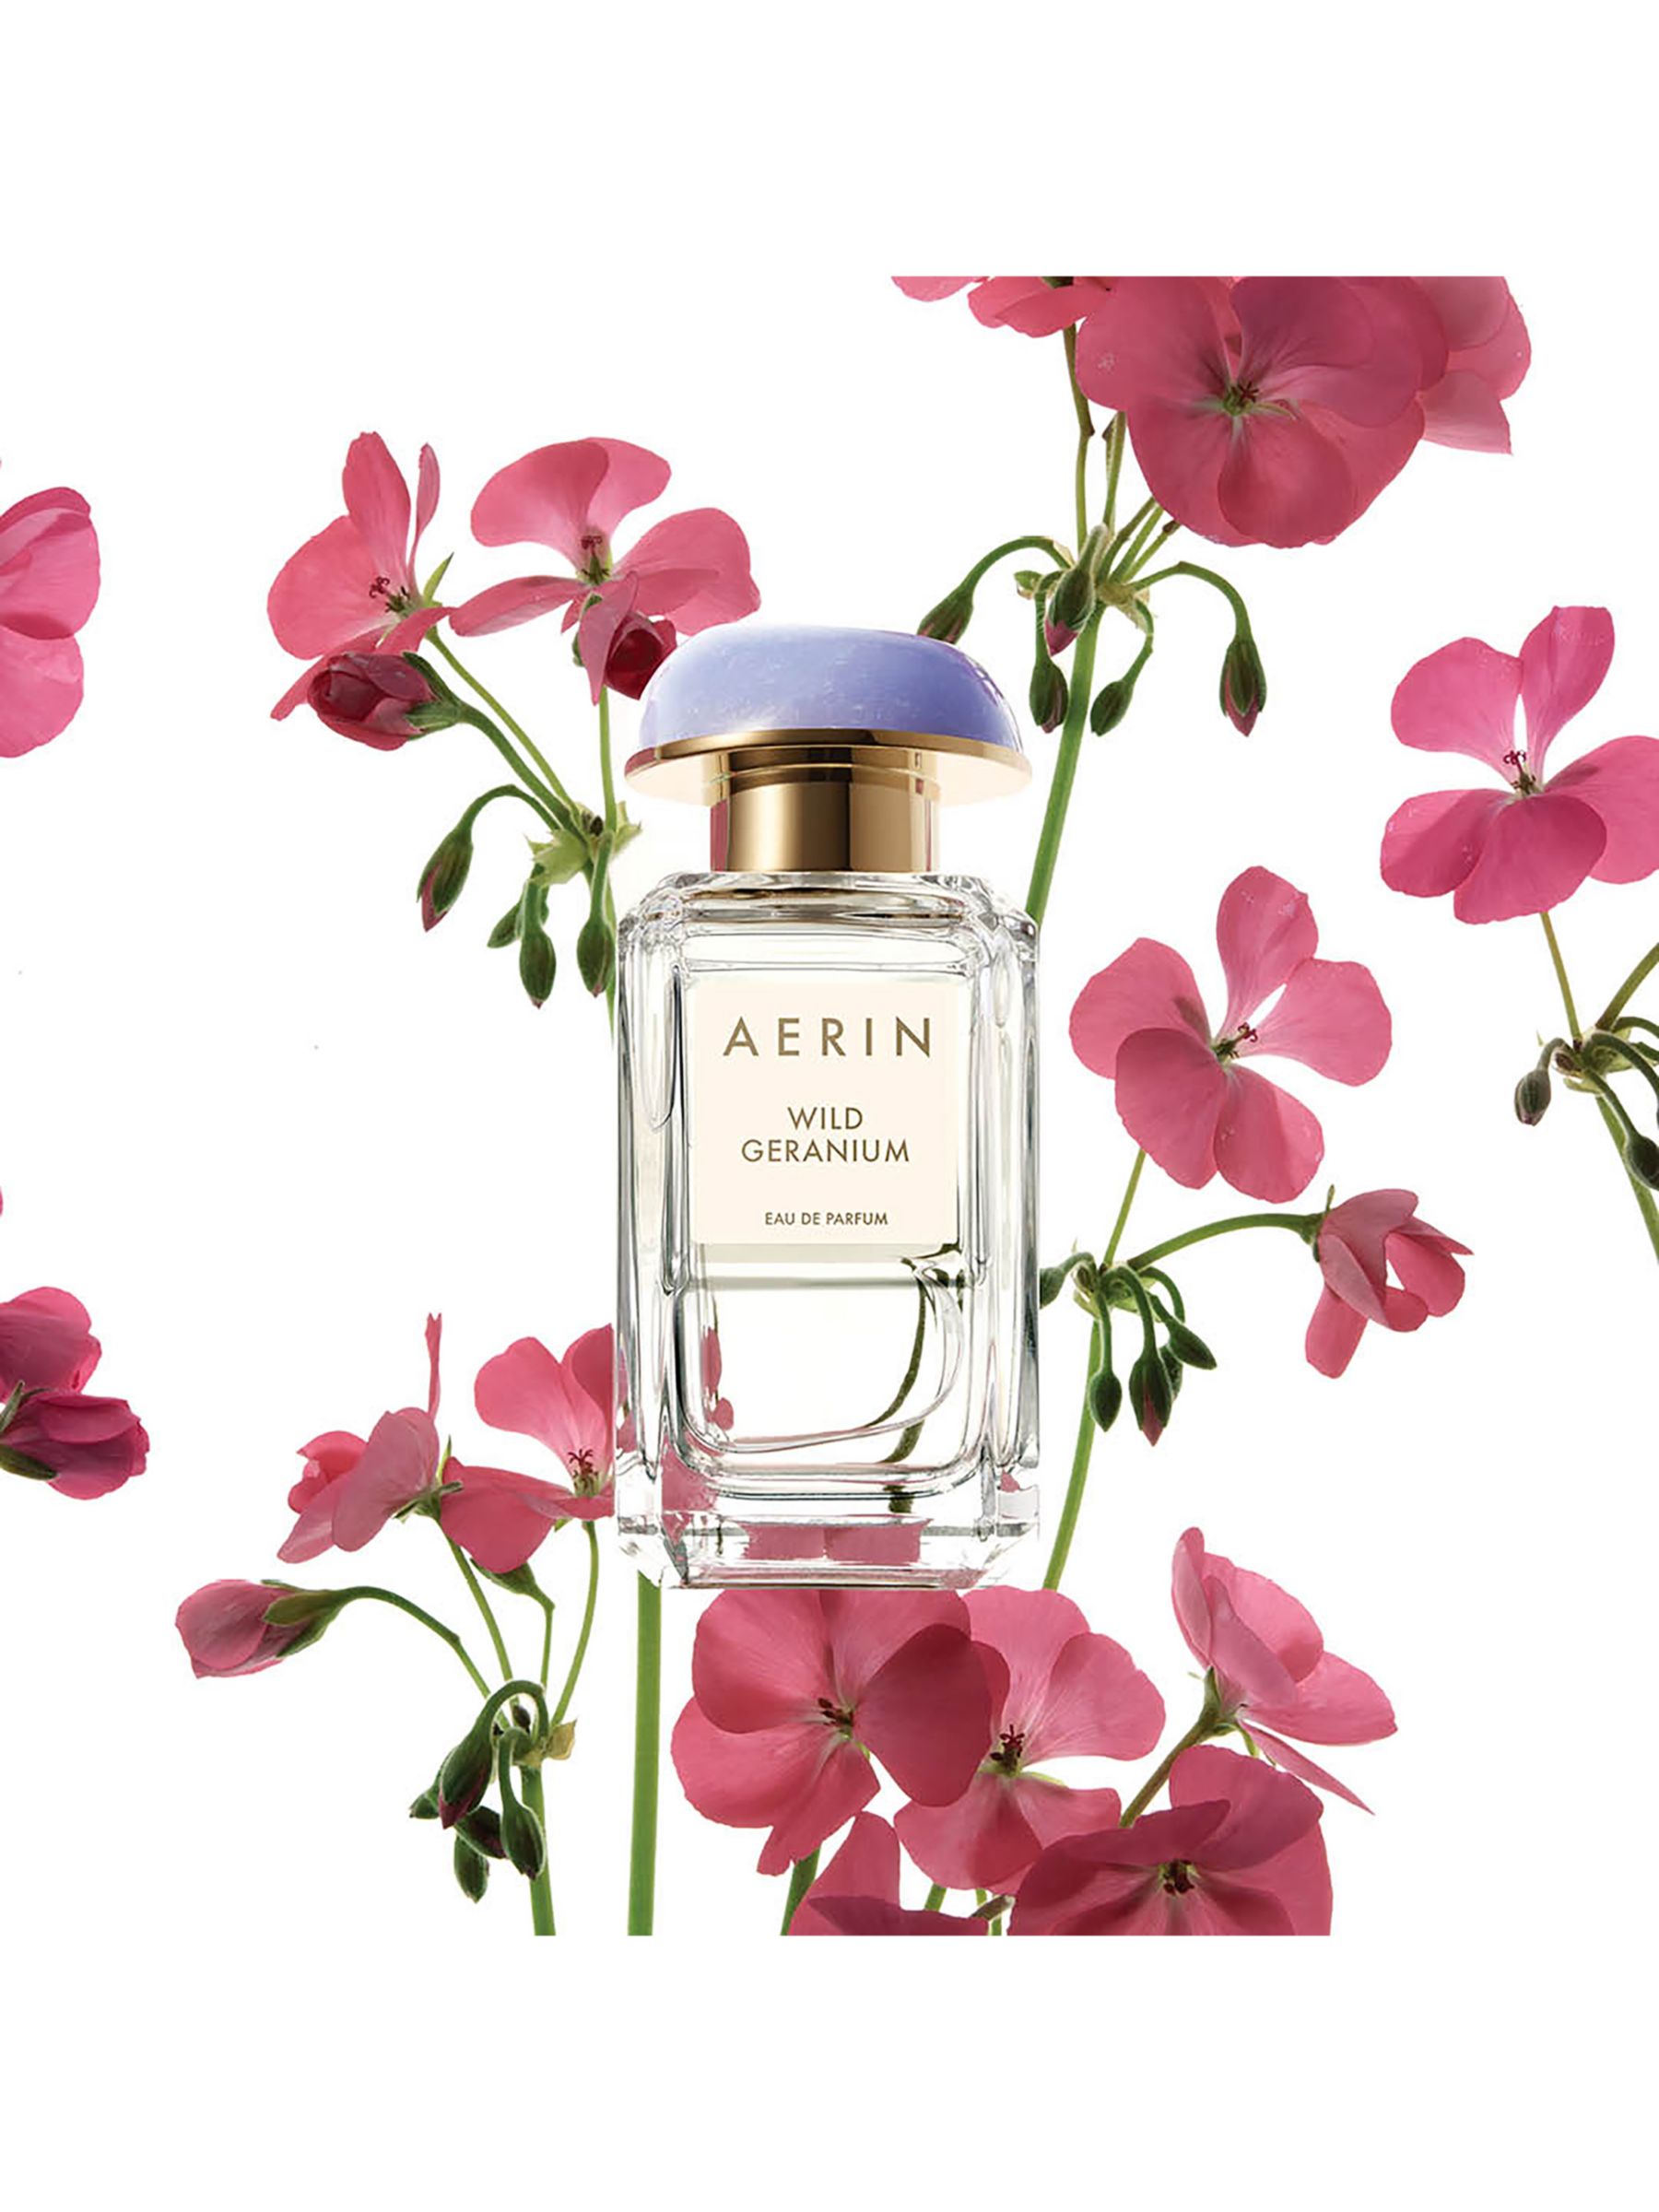 AERIN Wild Geranium Eau de Parfum, 100ml 2